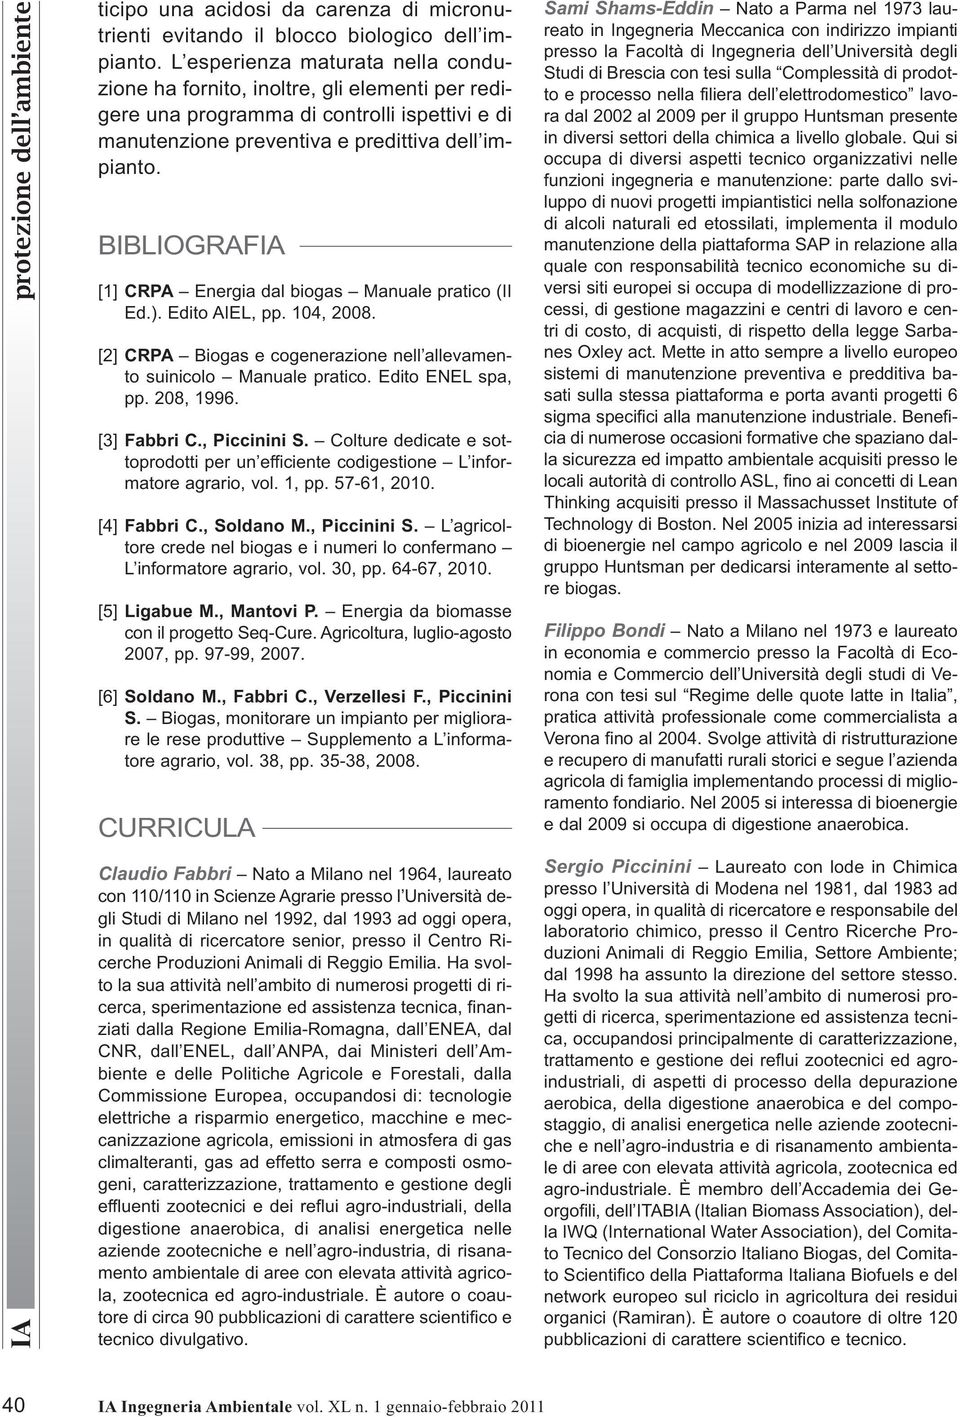 BIBLIOGRAFIA [1] CRPA Energia dal biogas Manuale pratico (II Ed.). Edito AIEL, pp. 104, 2008. [2] CRPA Biogas e cogenerazione nell allevamento suinicolo Manuale pratico. Edito ENEL spa, pp. 208, 1996.